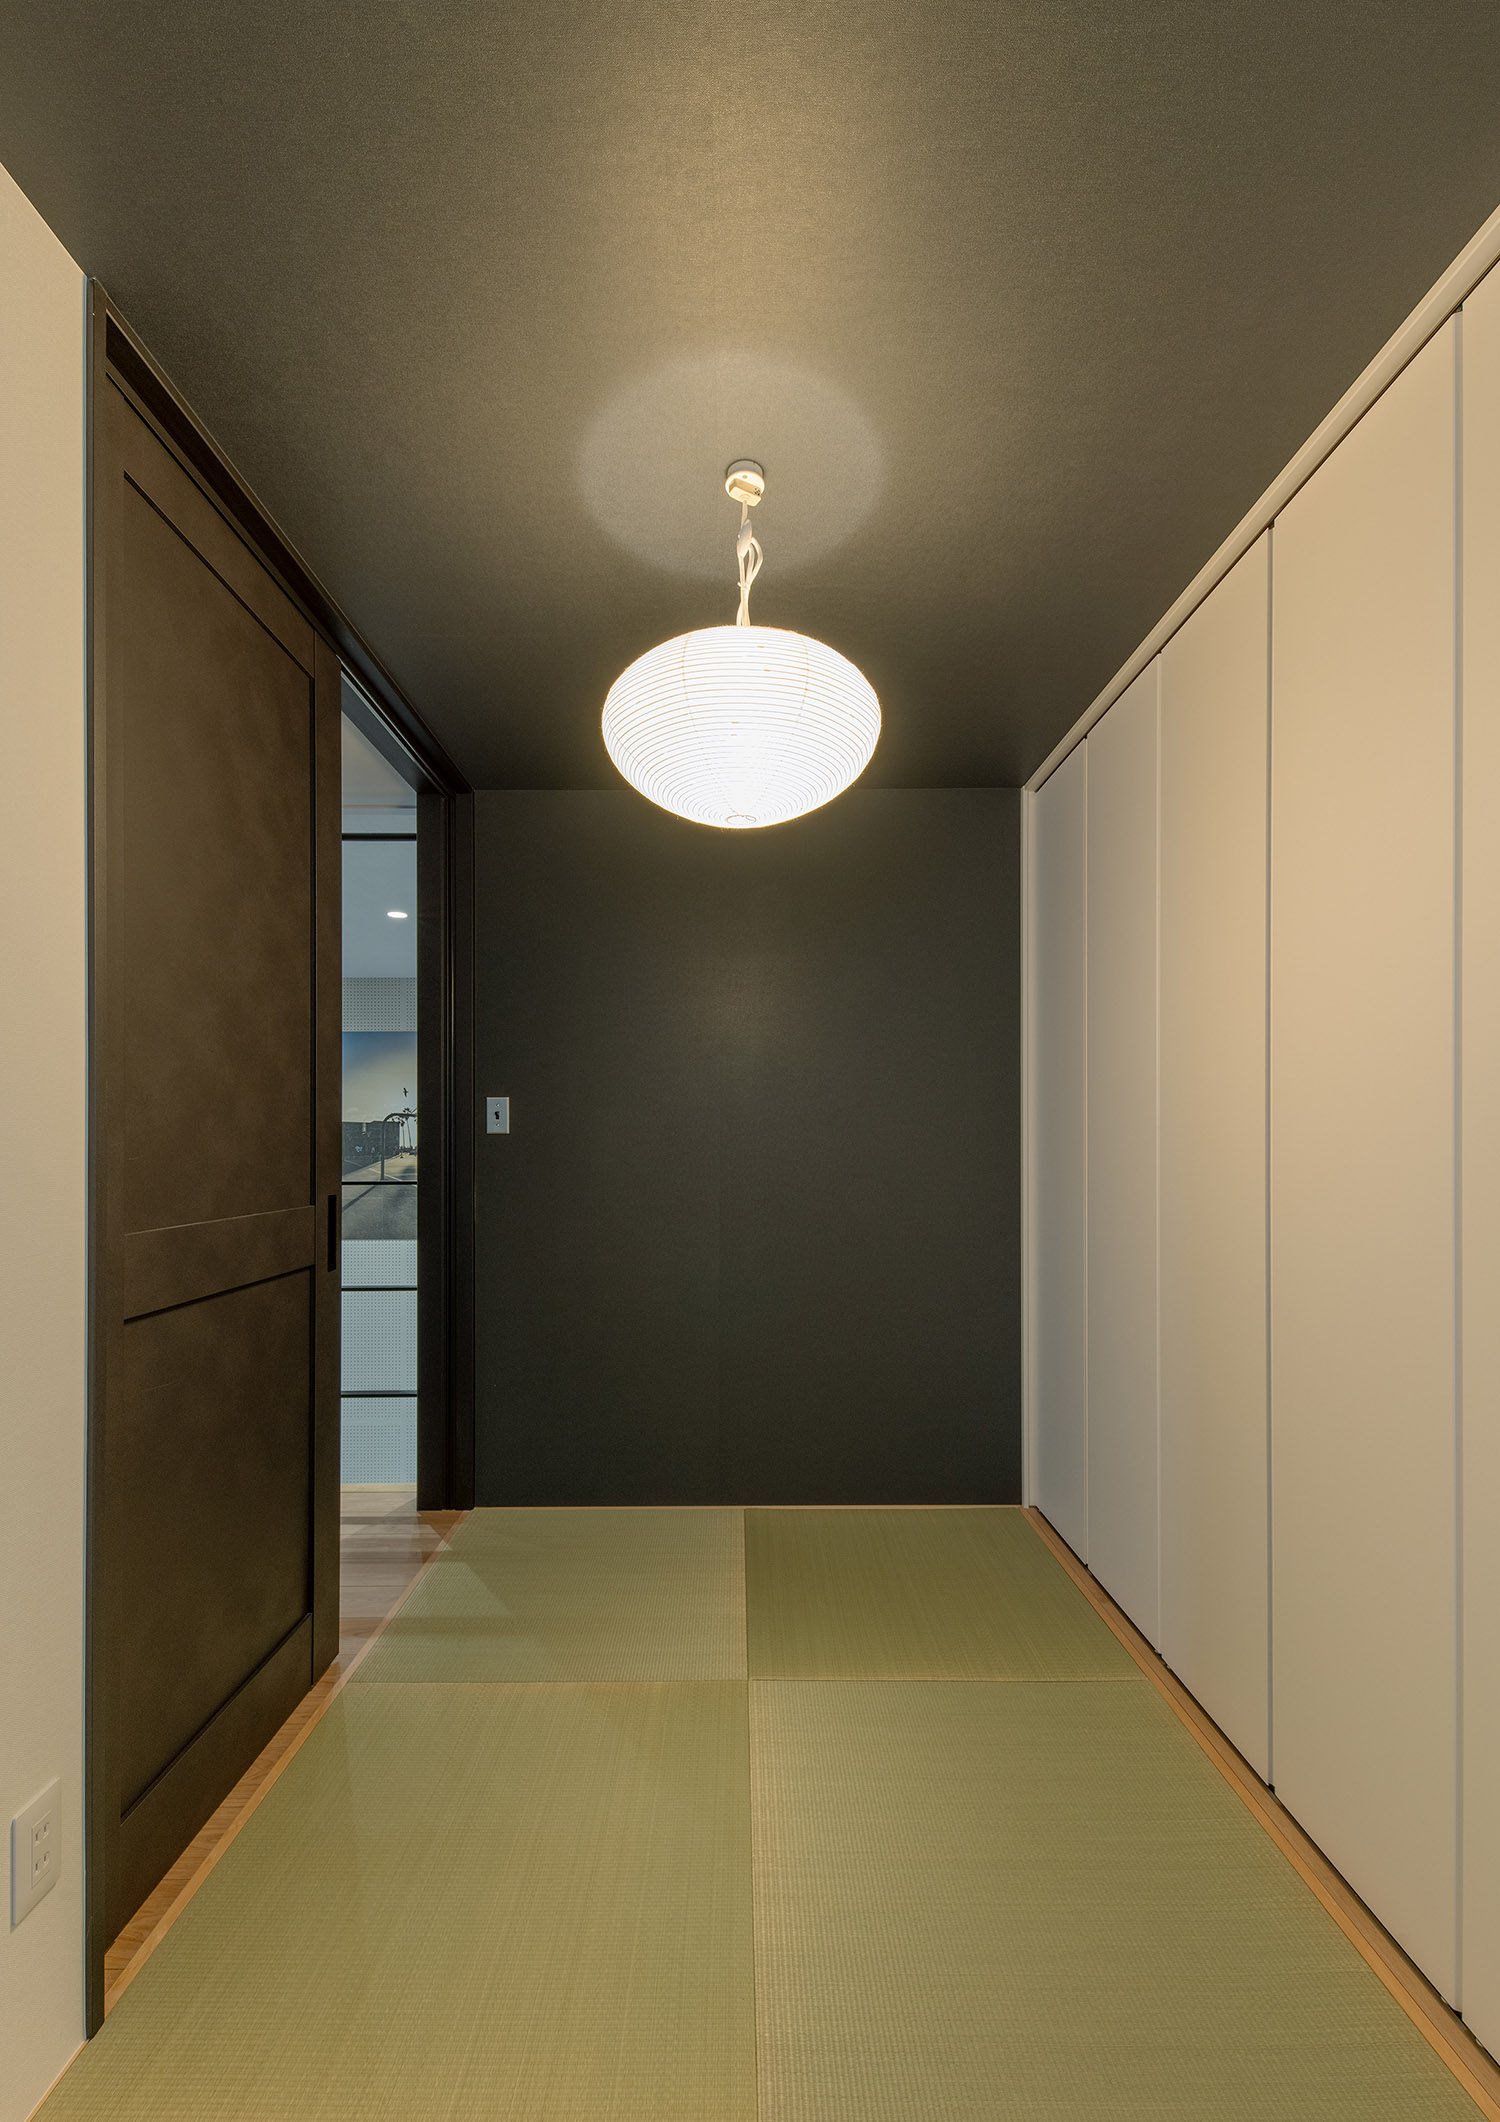 琉球畳が敷かれ、丸い間接照明がある和室・フリーダムアーキテクツの事例